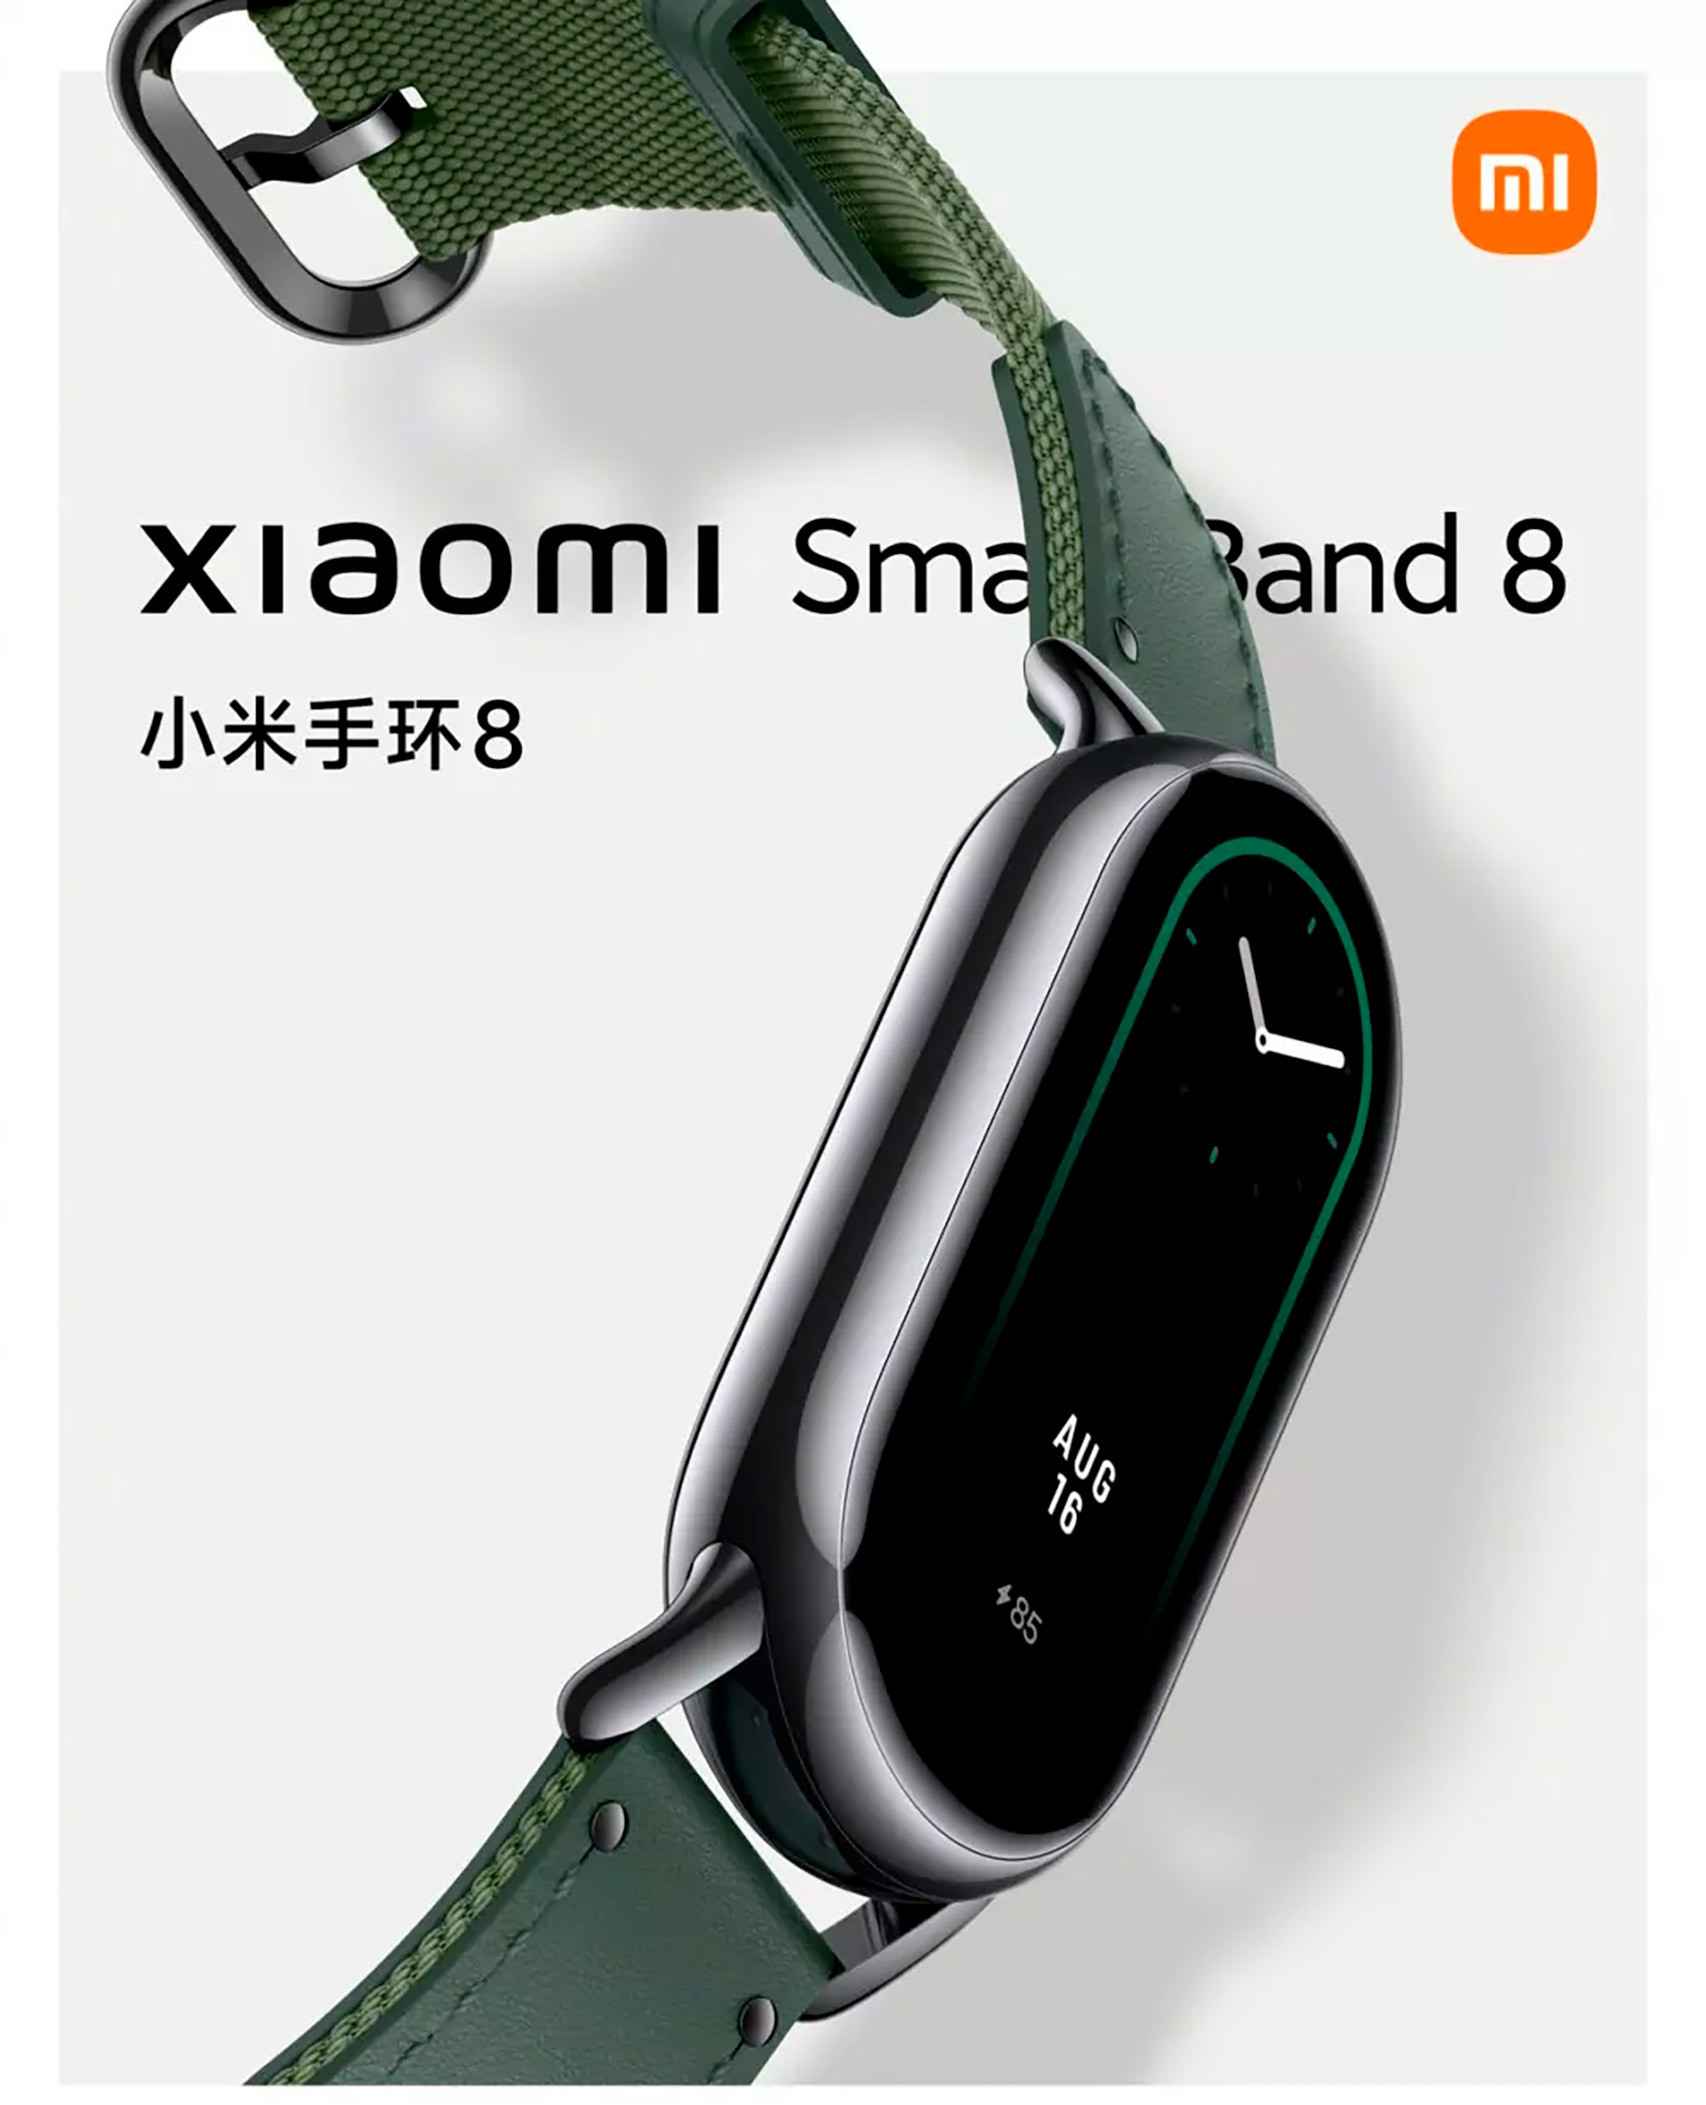 Xiaomi Band 8: Características y Precio